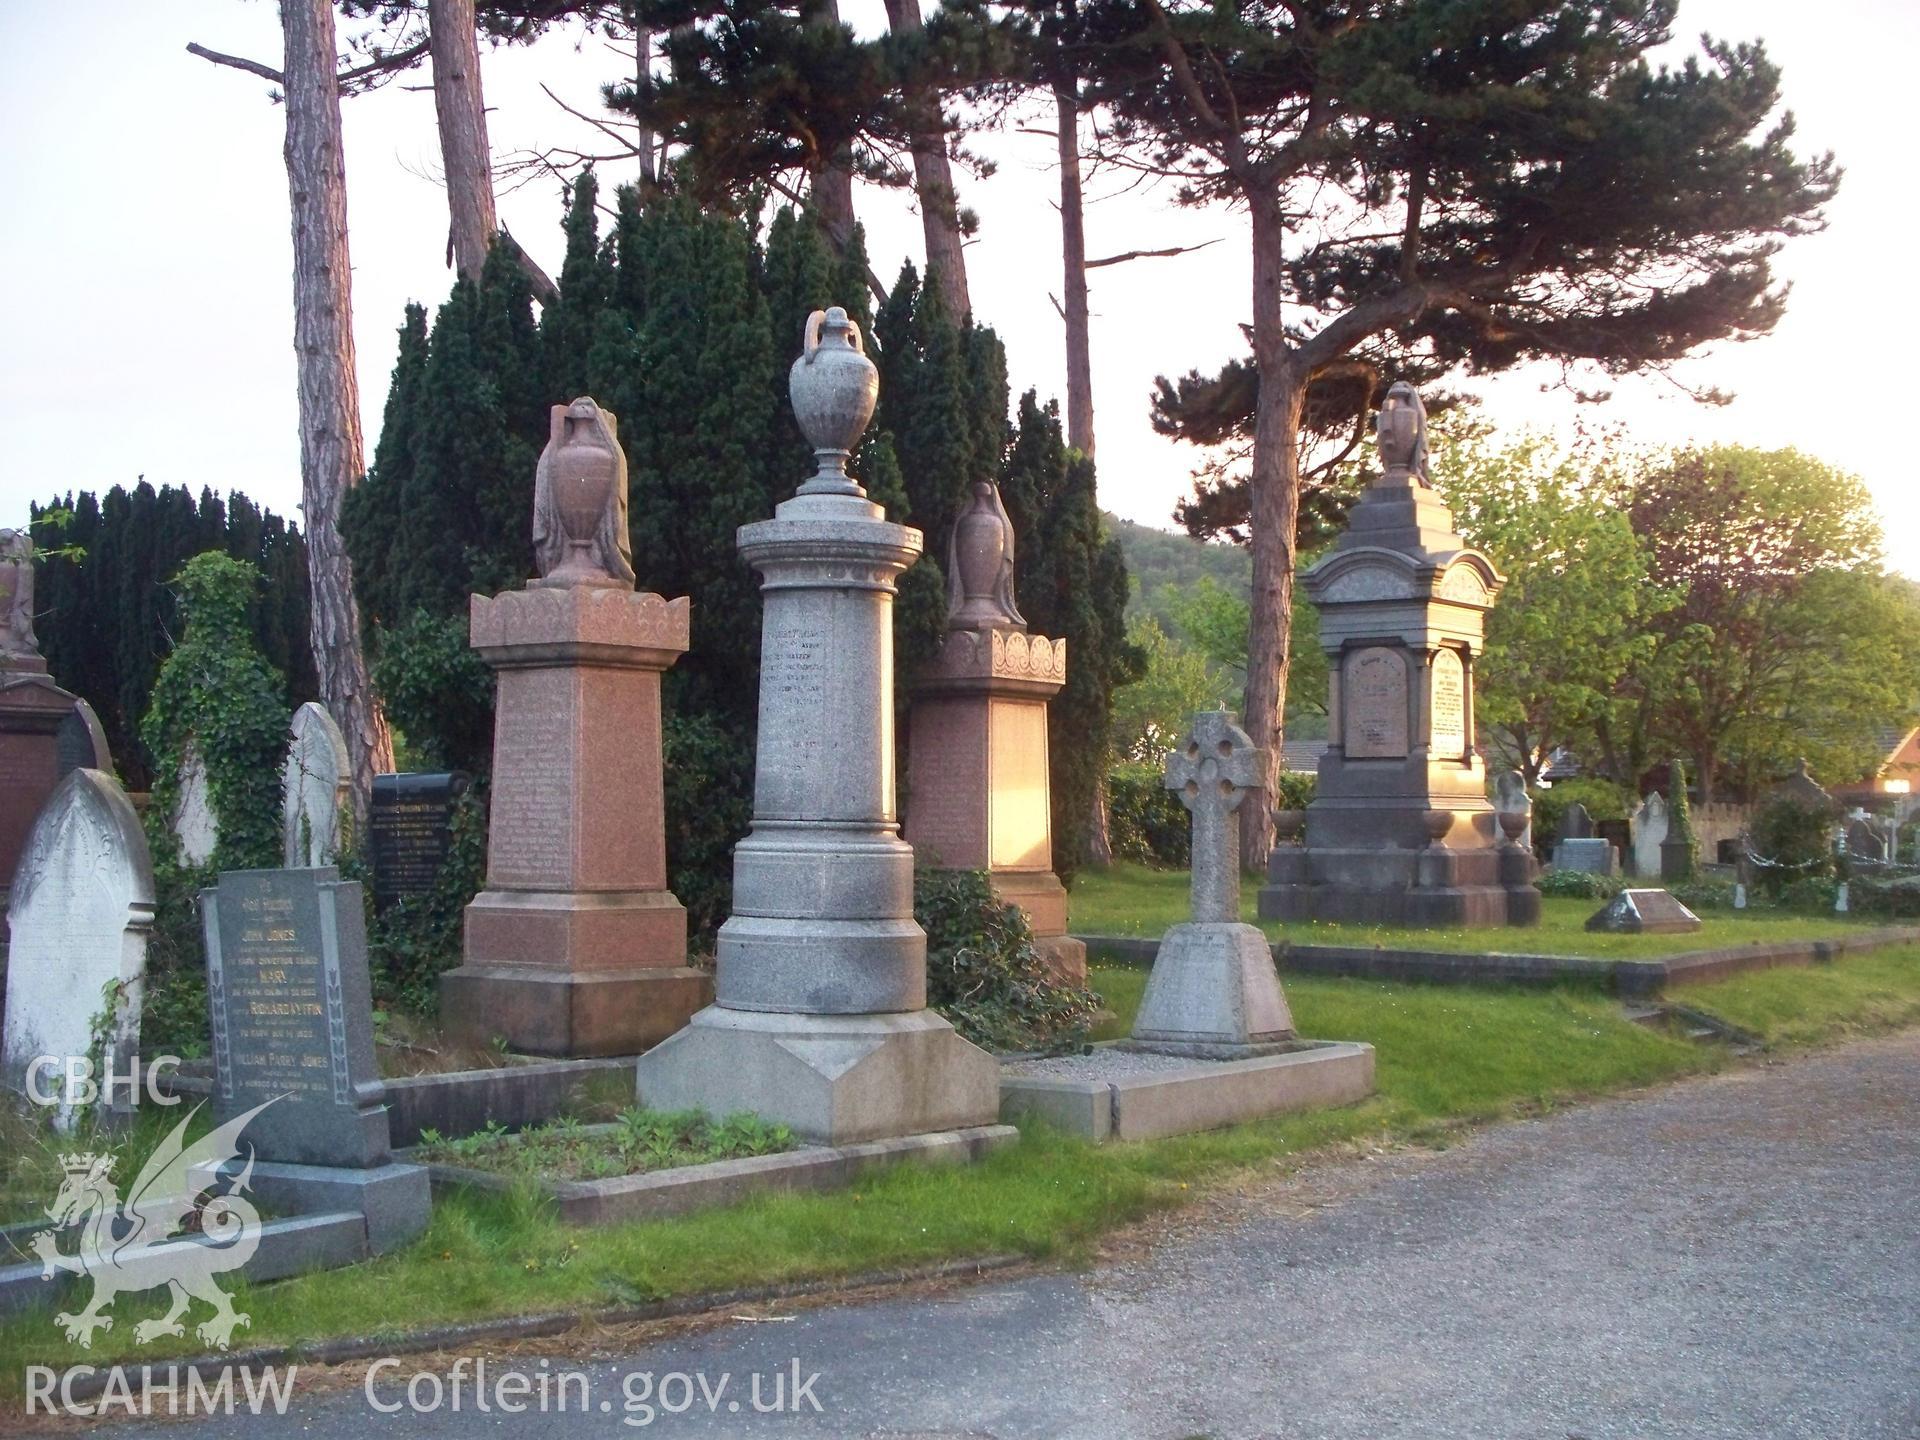 More Memorials in Graveyard.